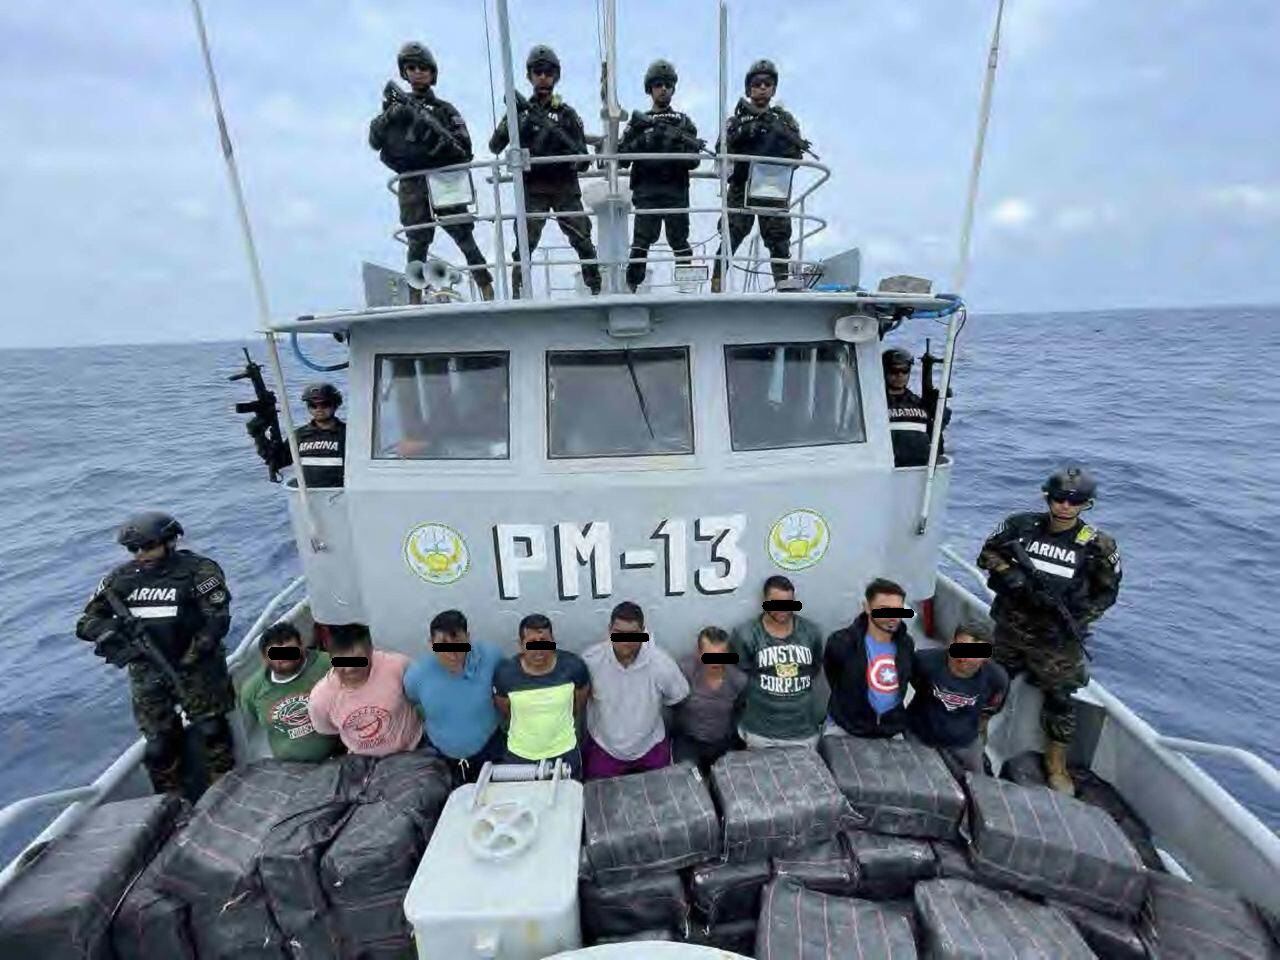 Grupo de ecuatorianos y guatemaltecos detenidos. Cortesía